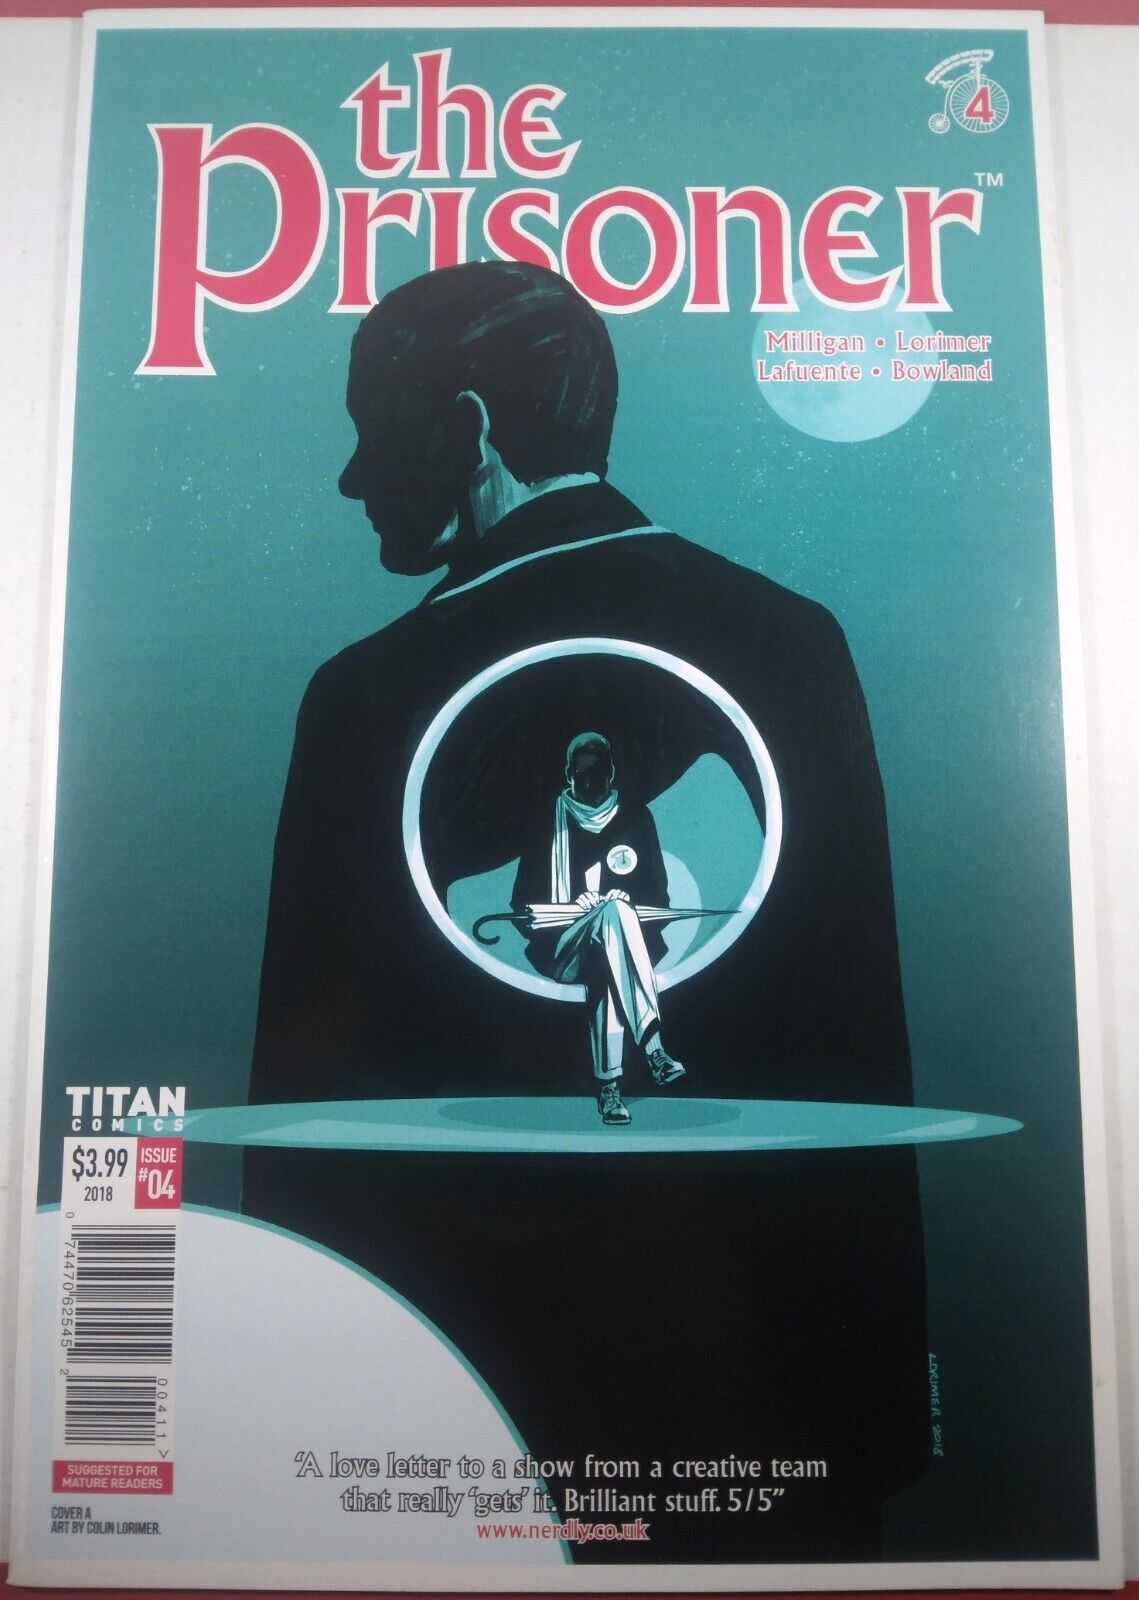 🔥 THE PRISONER #4 A COLIN LORIMER Titan Comics 2018 BBC SCARCE LOW PRINT RUN